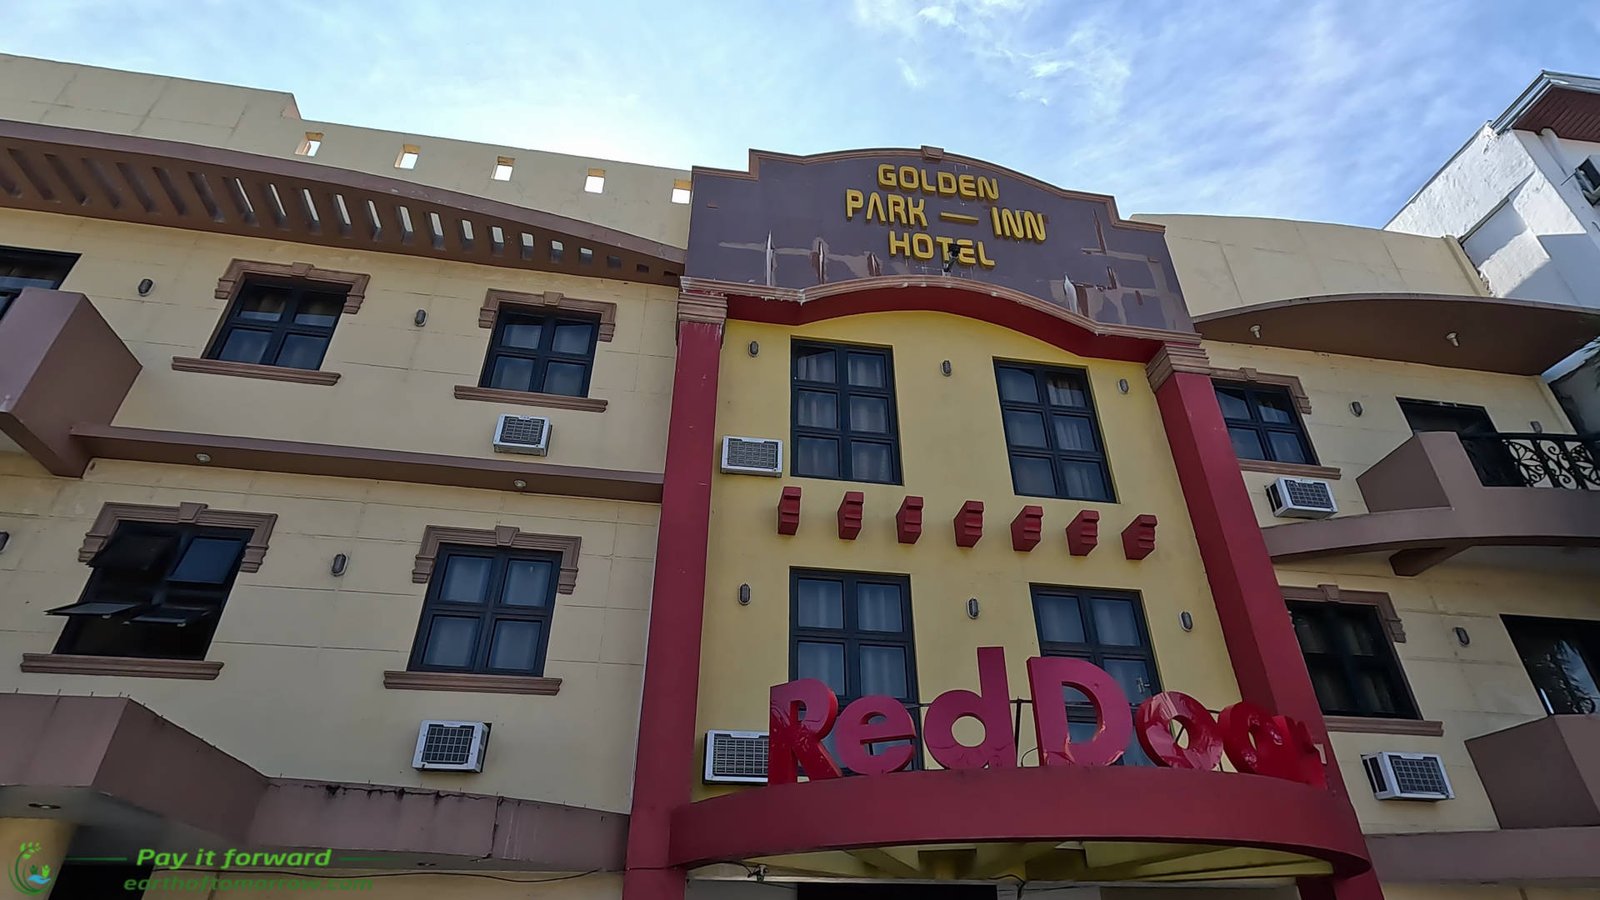 We review RedDoorz Golden Park Hotel in Santa Fe Luzon